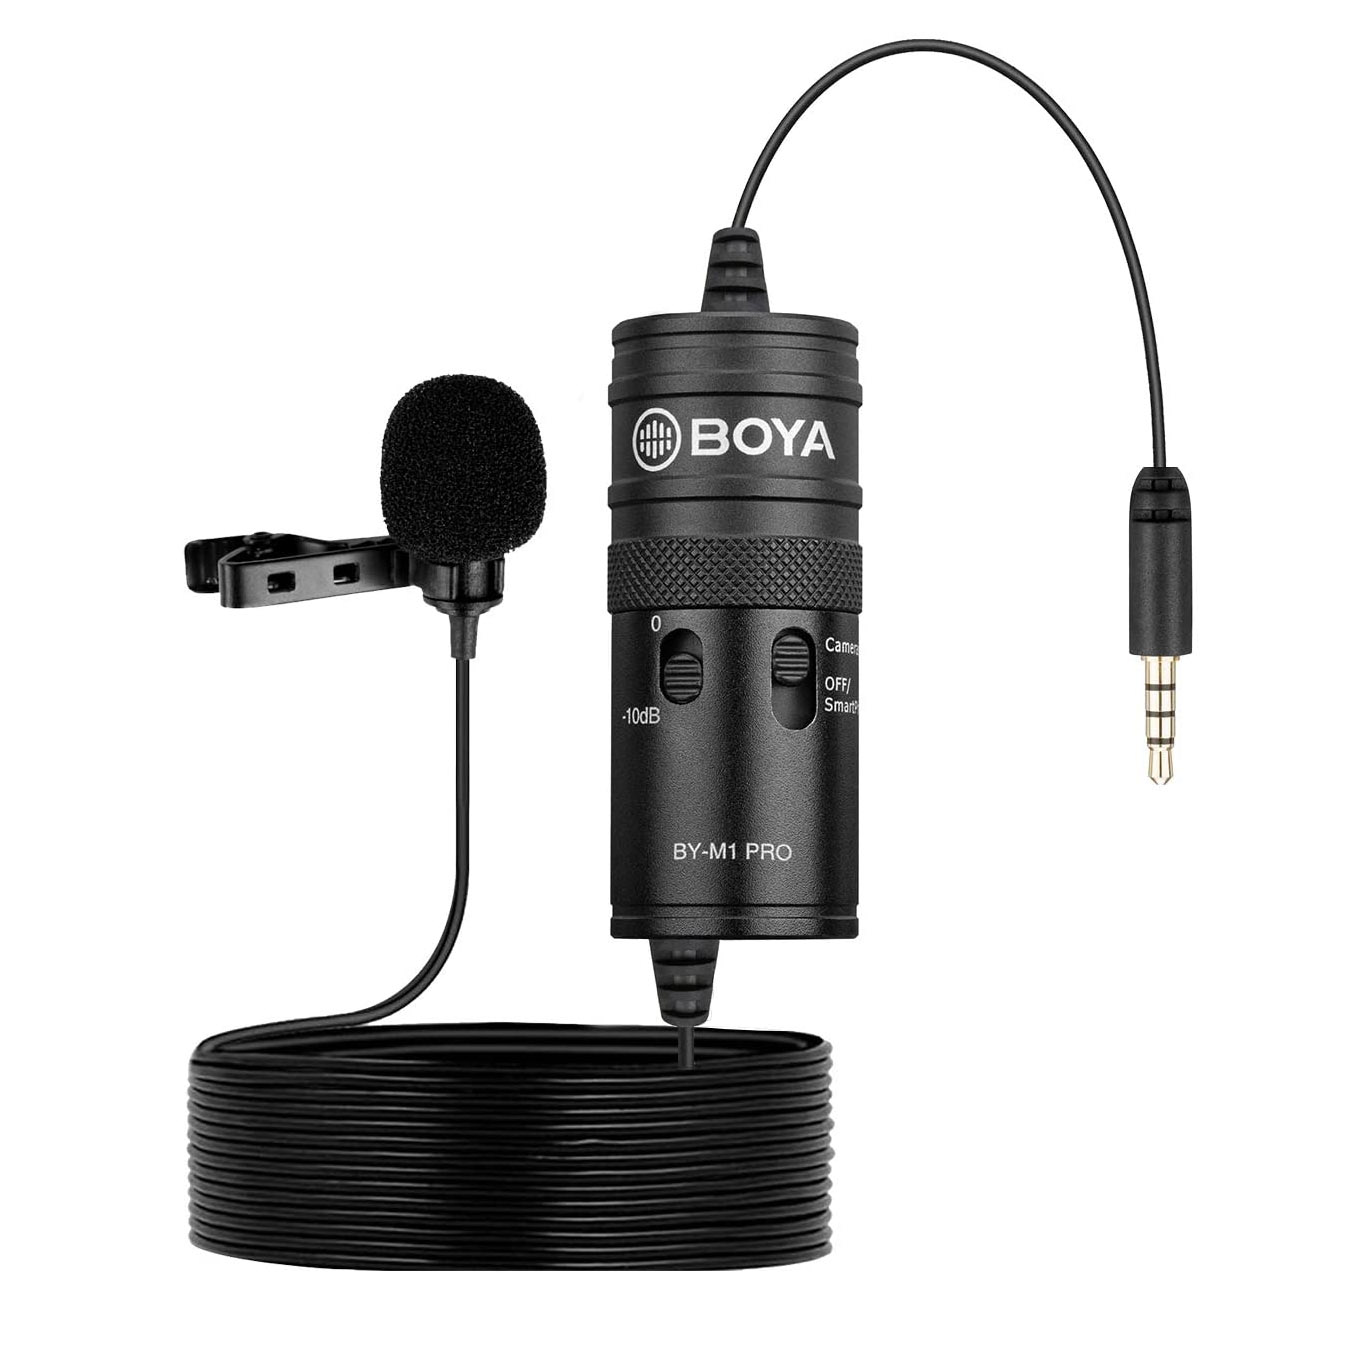 Microfono Condensador Solapa Clip 3.5mm Camara Grabadora PC ETC